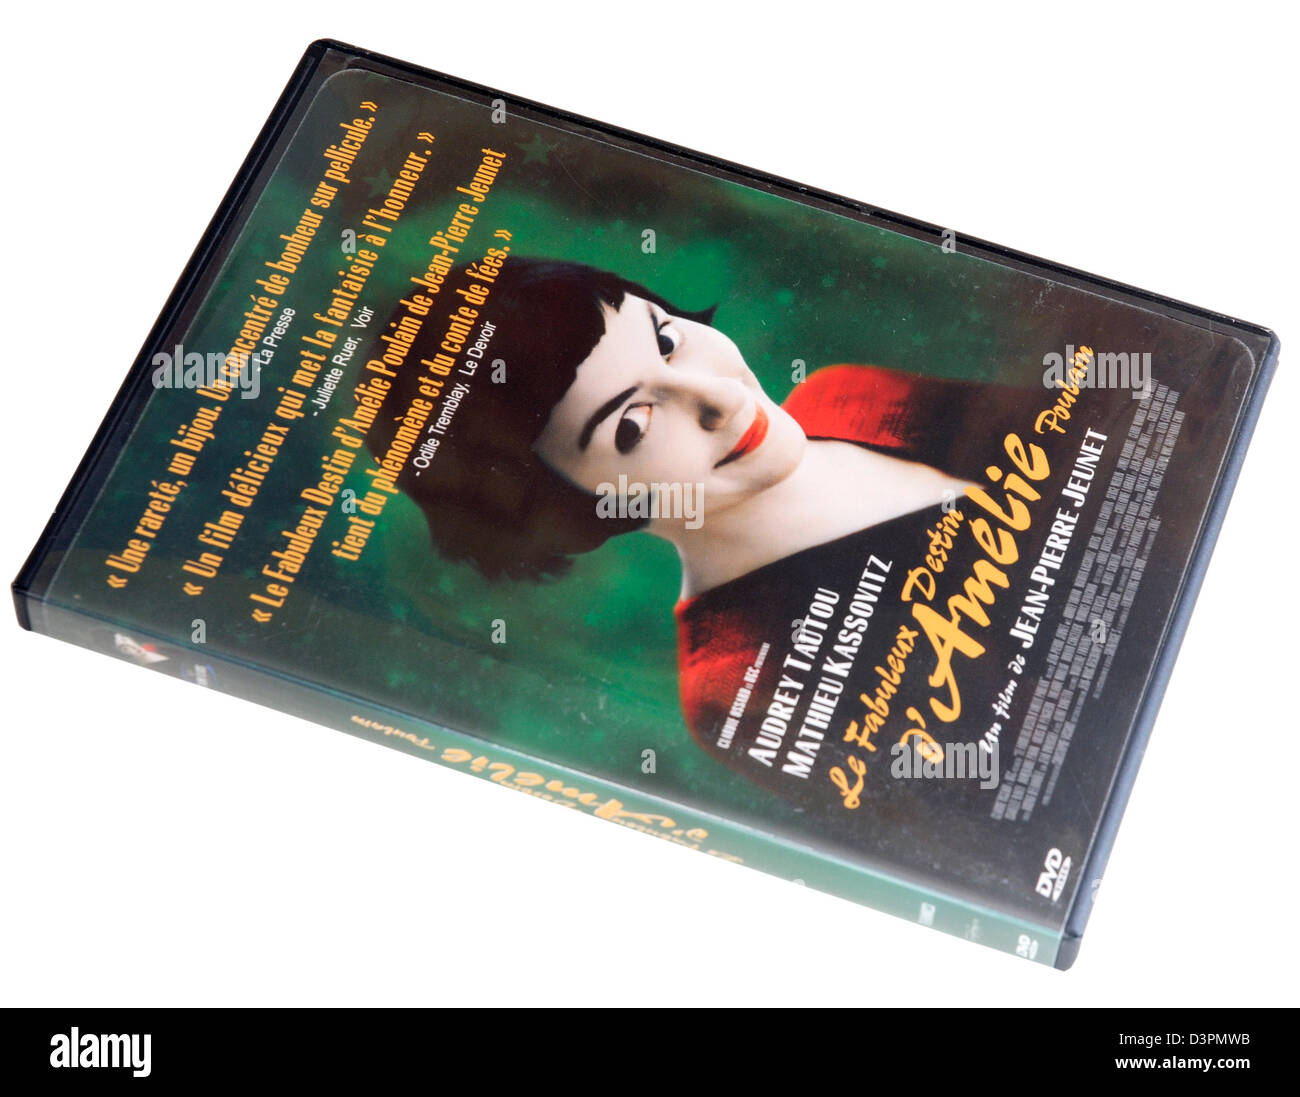 DVD du film Amélie Poulain Banque D'Images